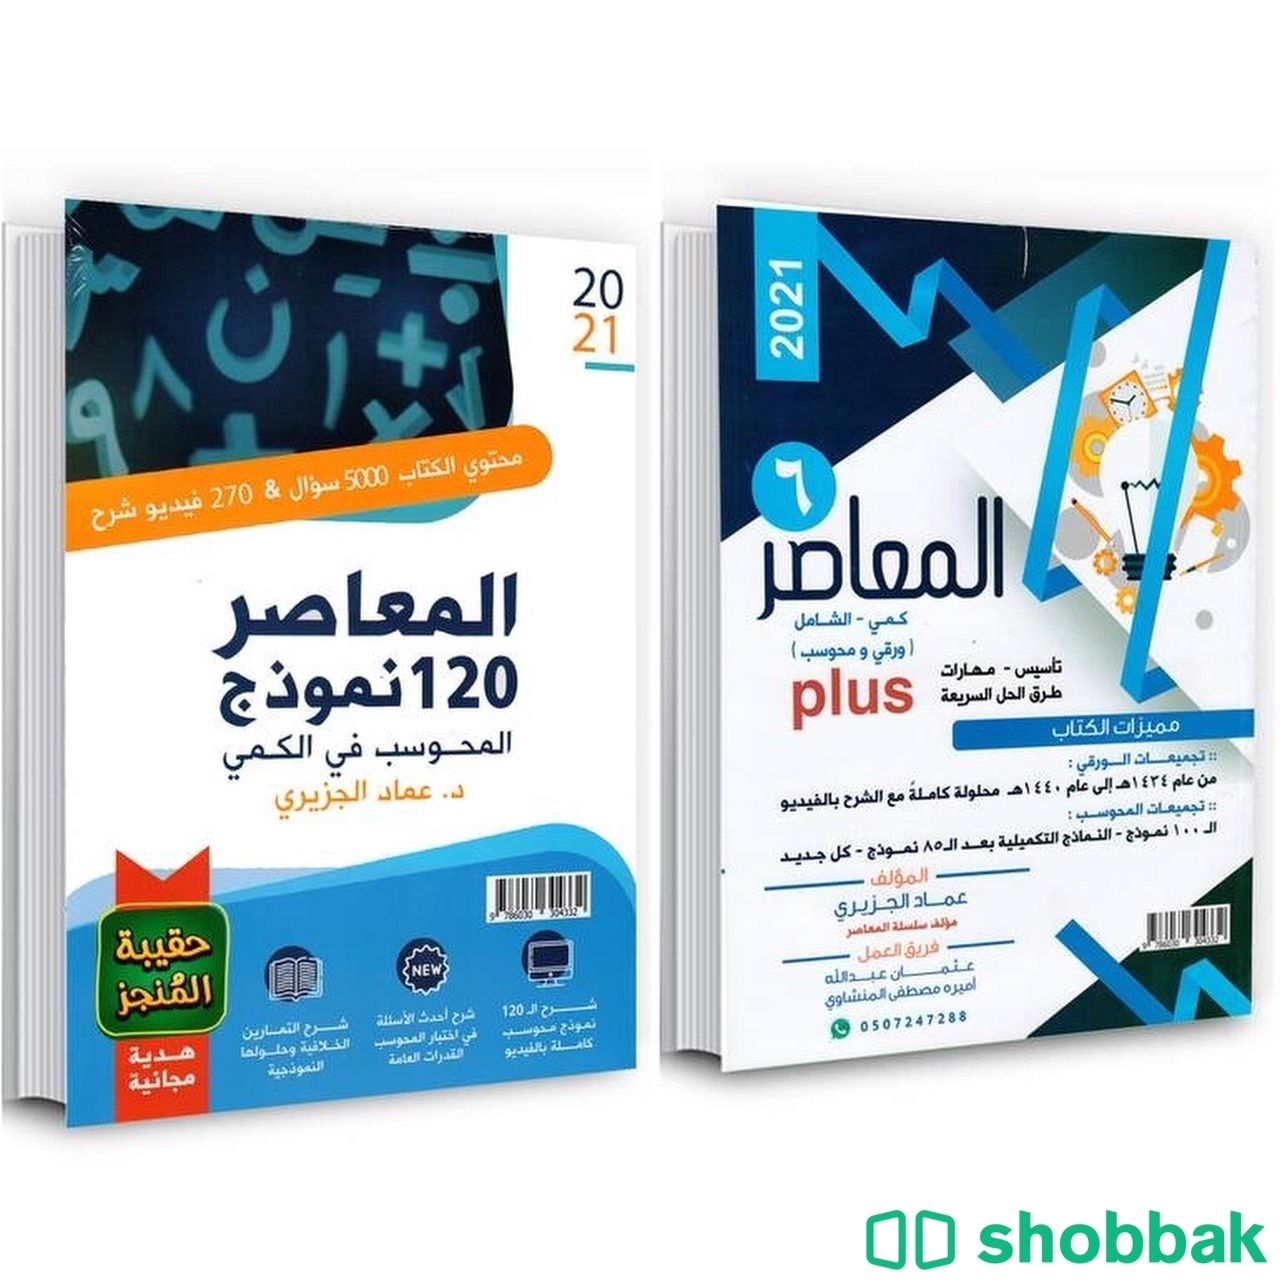 كتاب المعاصر و ١٢٠كمي  Shobbak Saudi Arabia